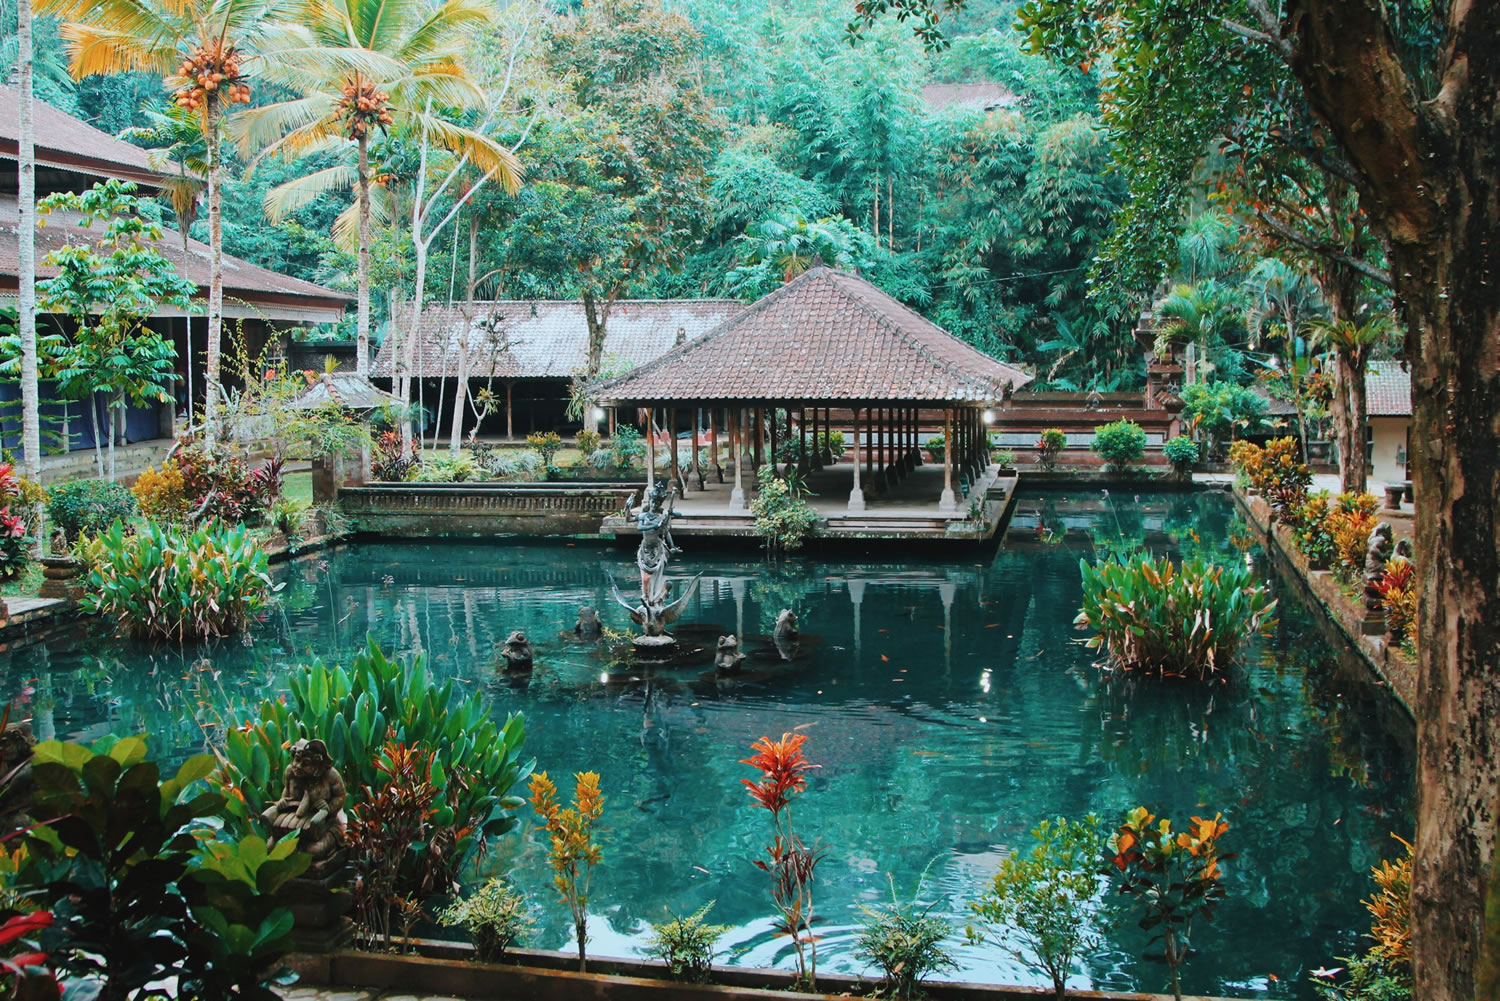 Turizm uzmanı Gümüşel açıkladı: Turizmin düşük maliyetli yeni gözdesi Bali